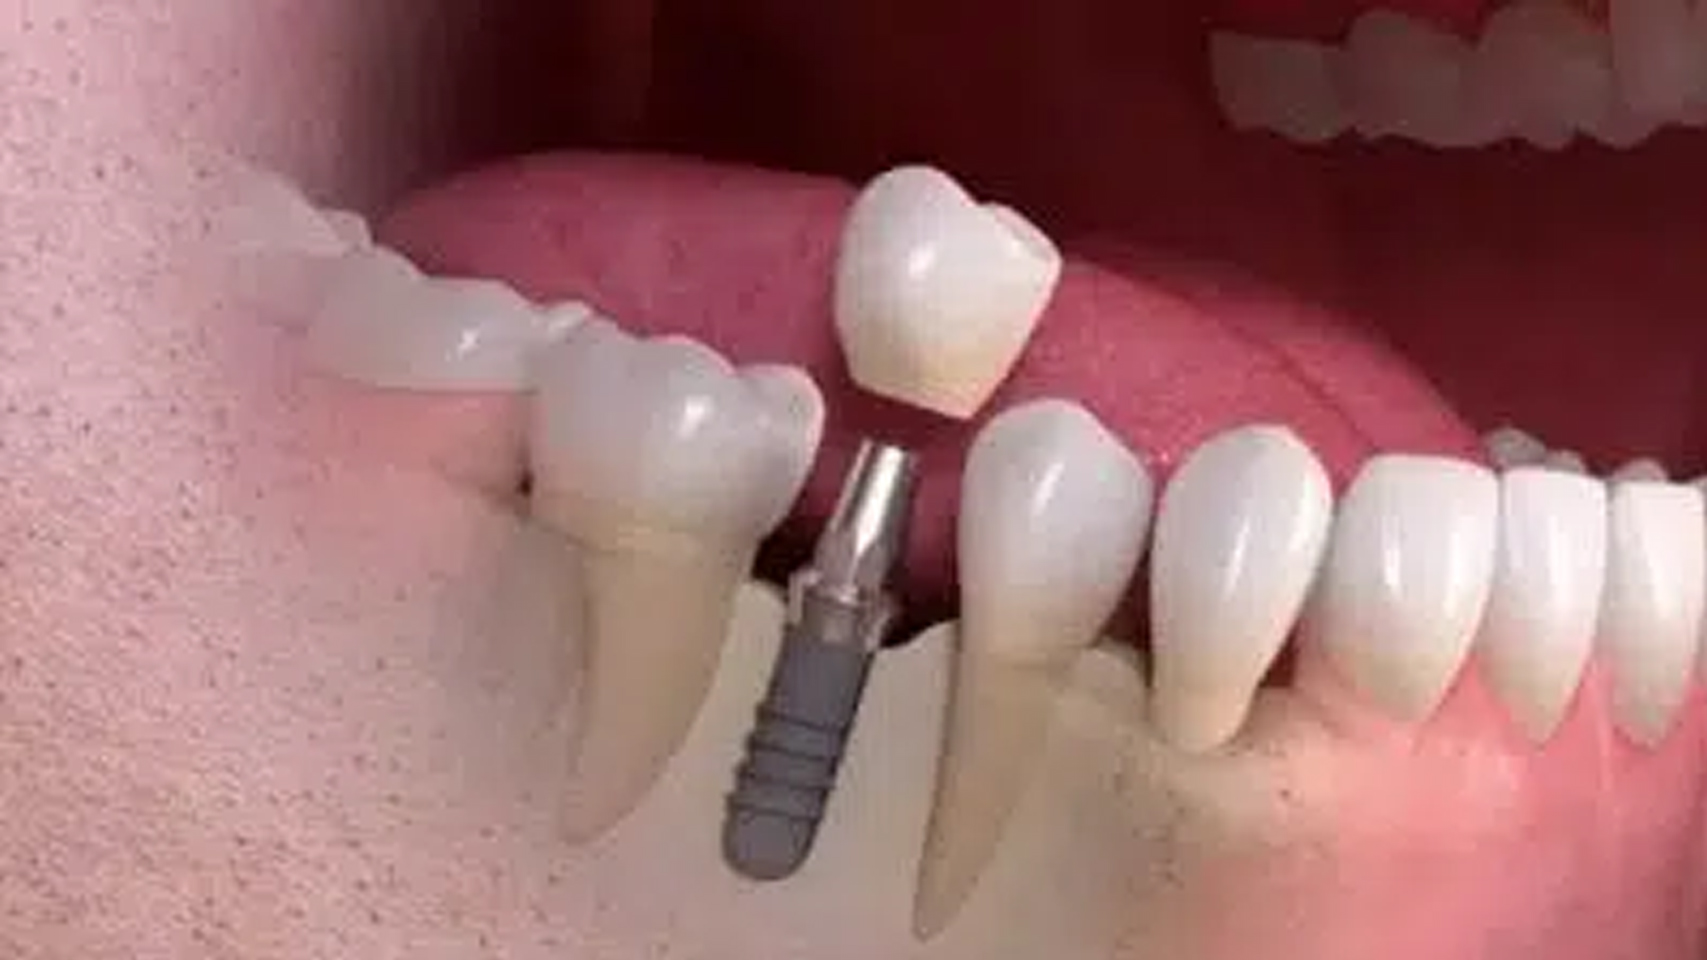 How does Diode Laser help dental implants?